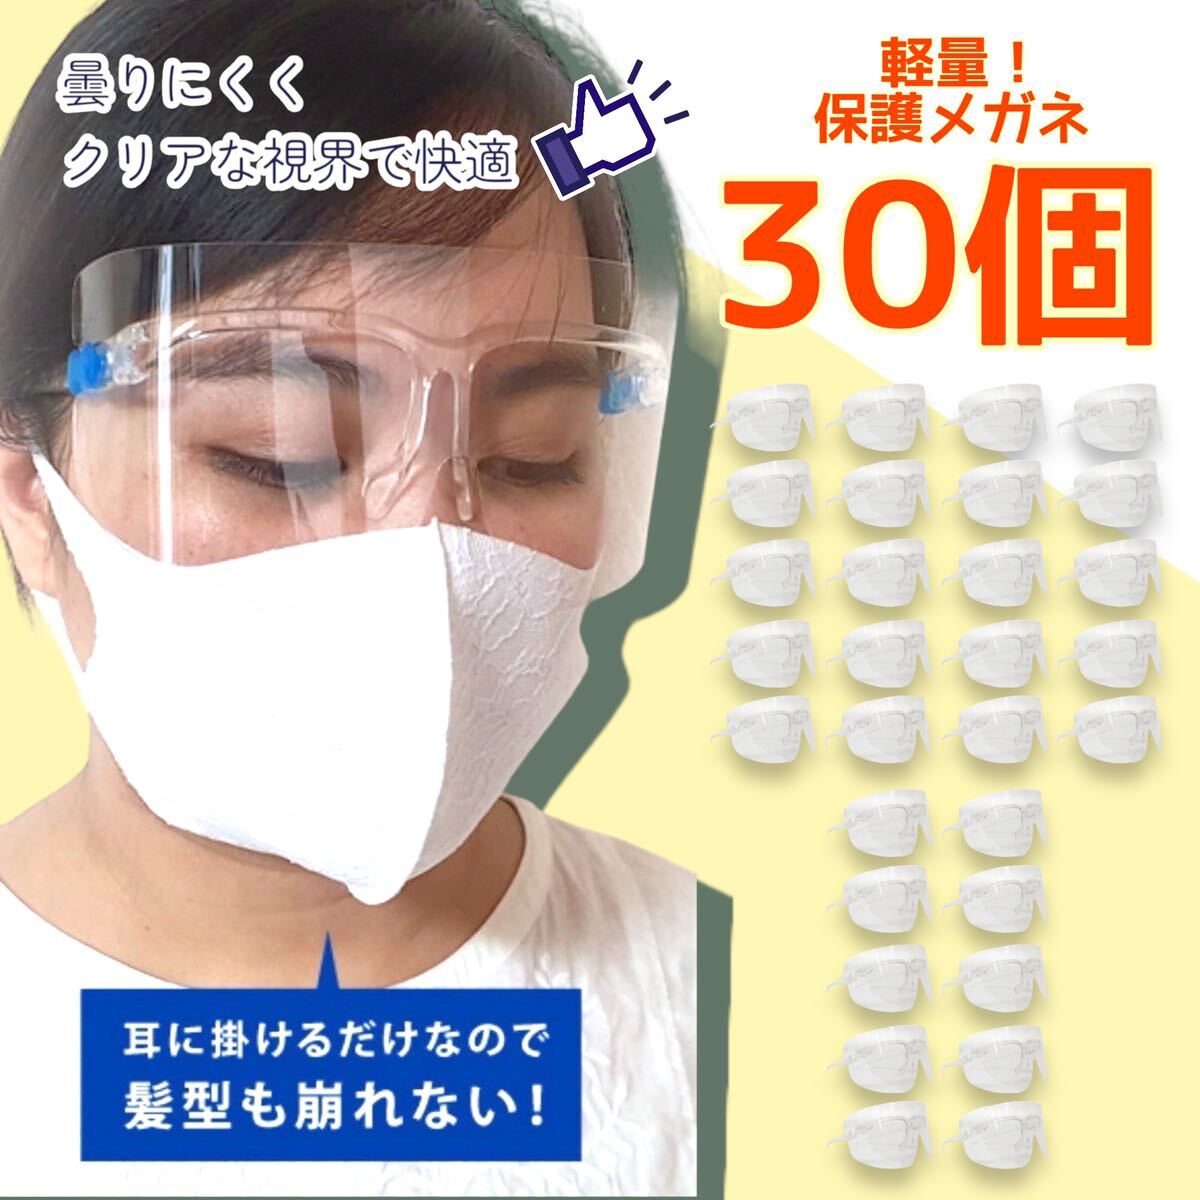 【30個セット】保護メガネ フェイスシールド 大人用 介護 医療 簡易式 軽量_画像1